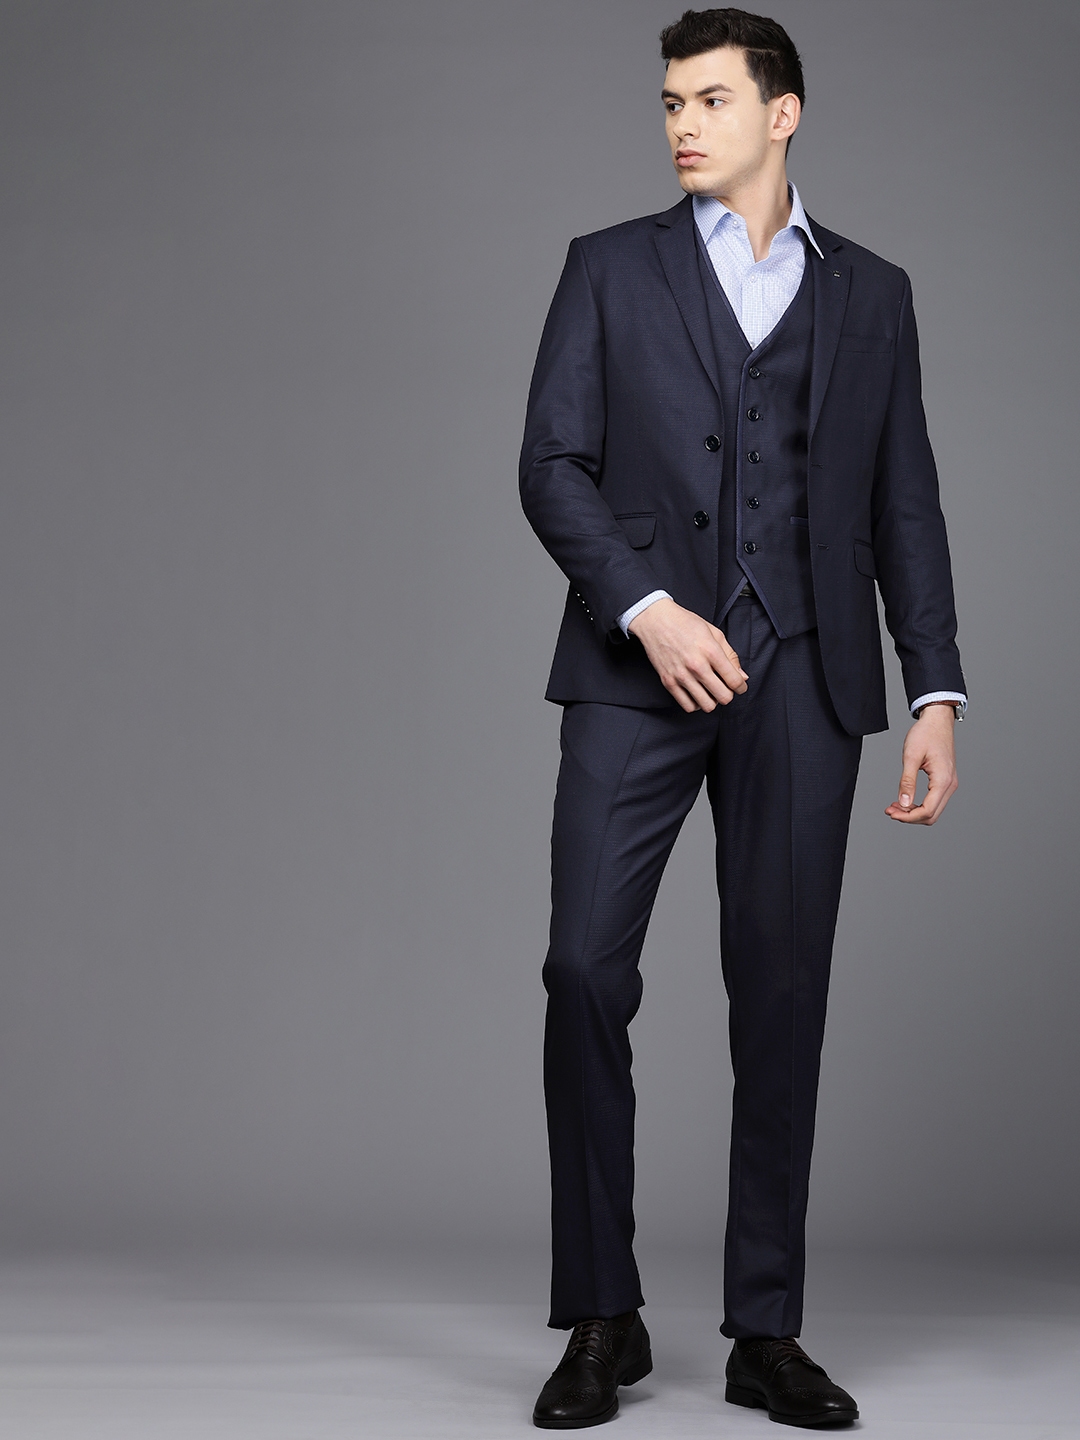 Buy Khaki 3P-Suit Sets for Men by LOUIS PHILIPPE Online